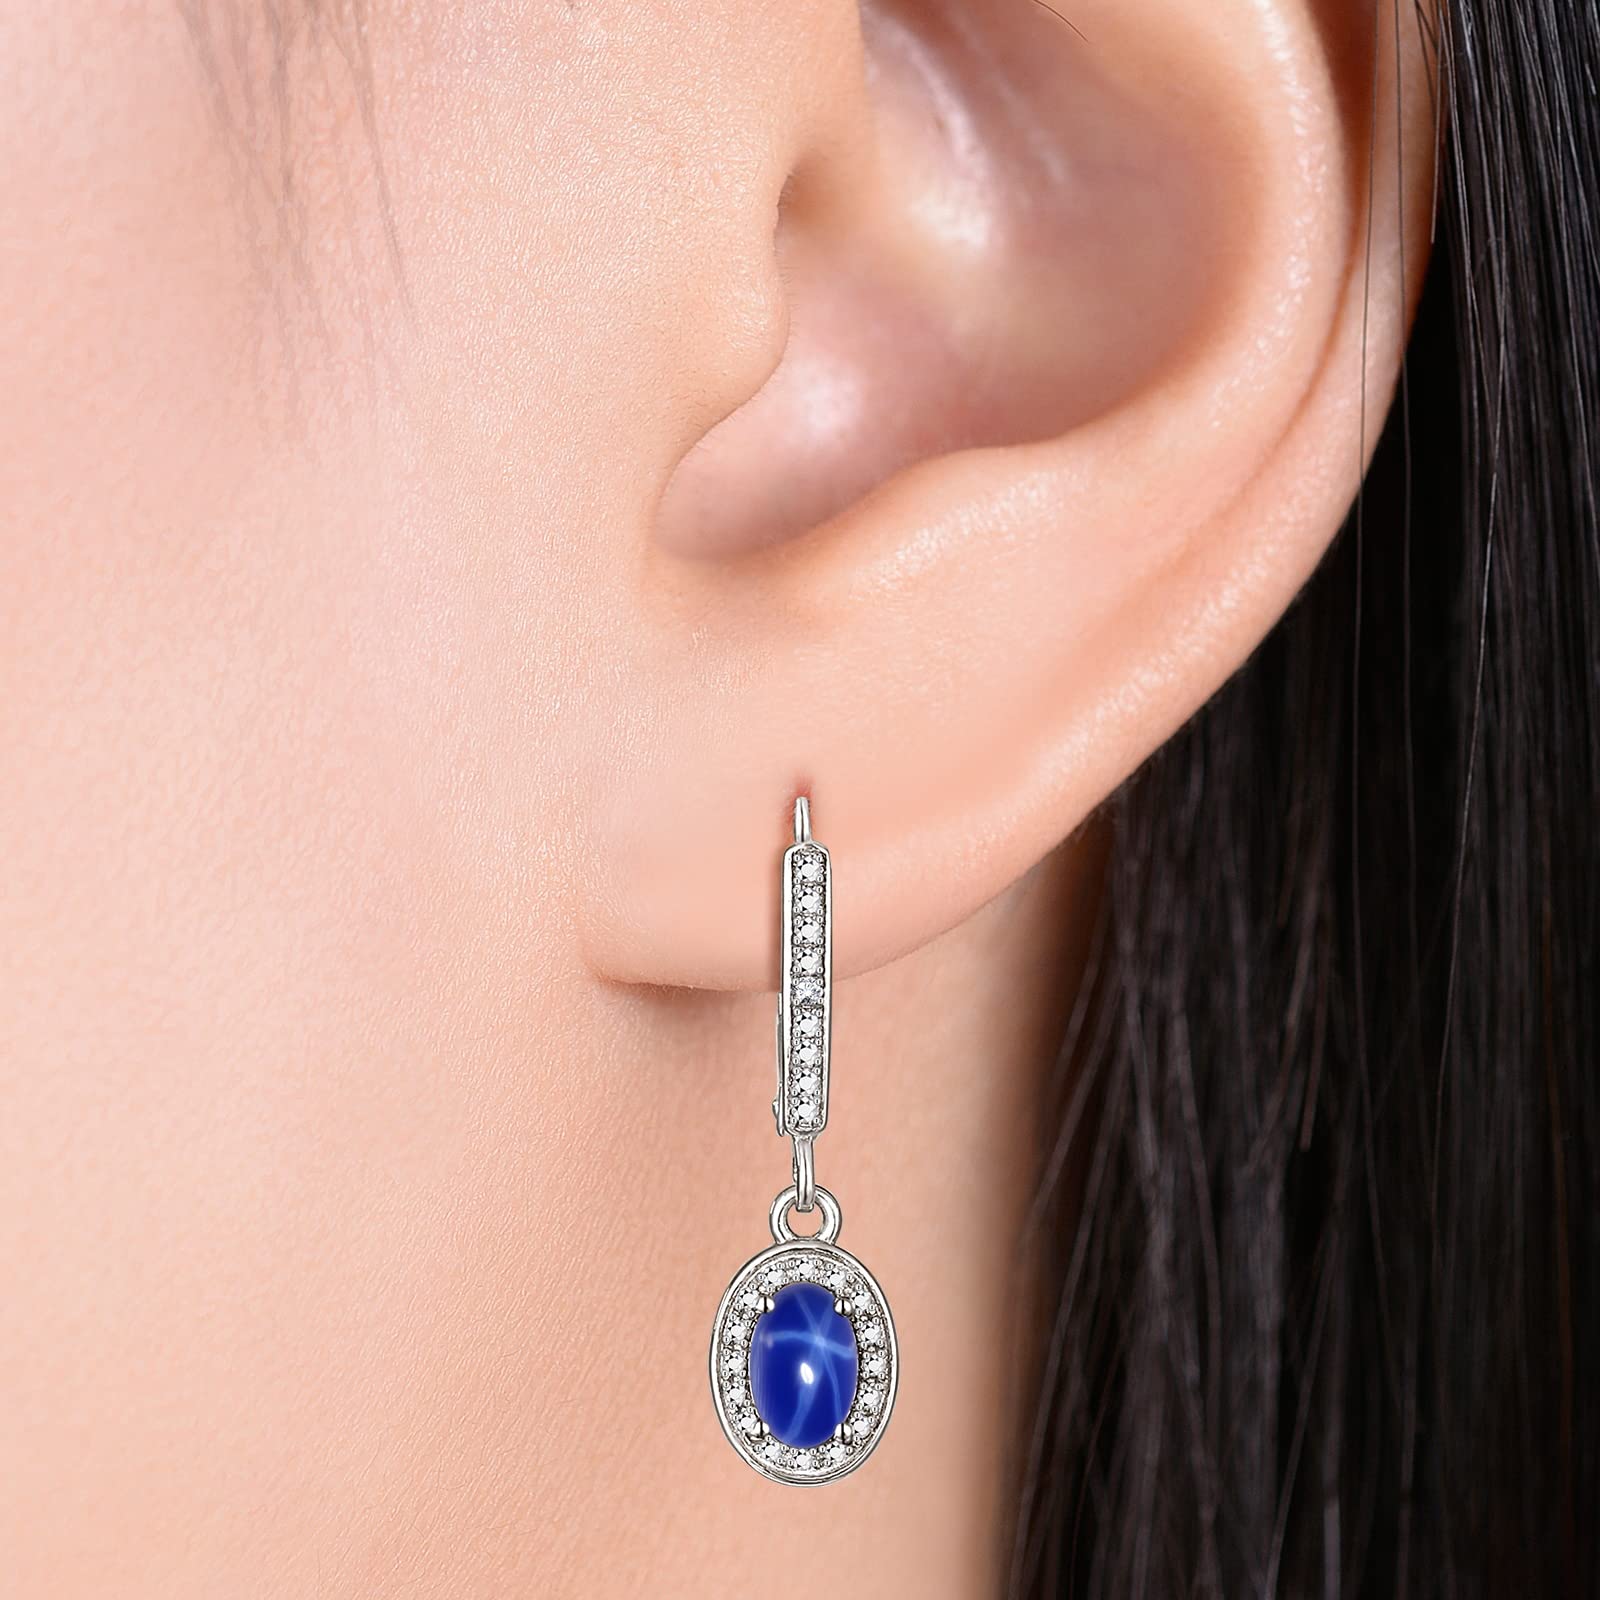 RYLOS Earrings For Women 925 Silver Earrings with Oval Shape Gemstone & Genuine Diamonds Dangling Earrings 6X4MM Birthstone Earring Color Stone Jewelry For Women Silver Earrings